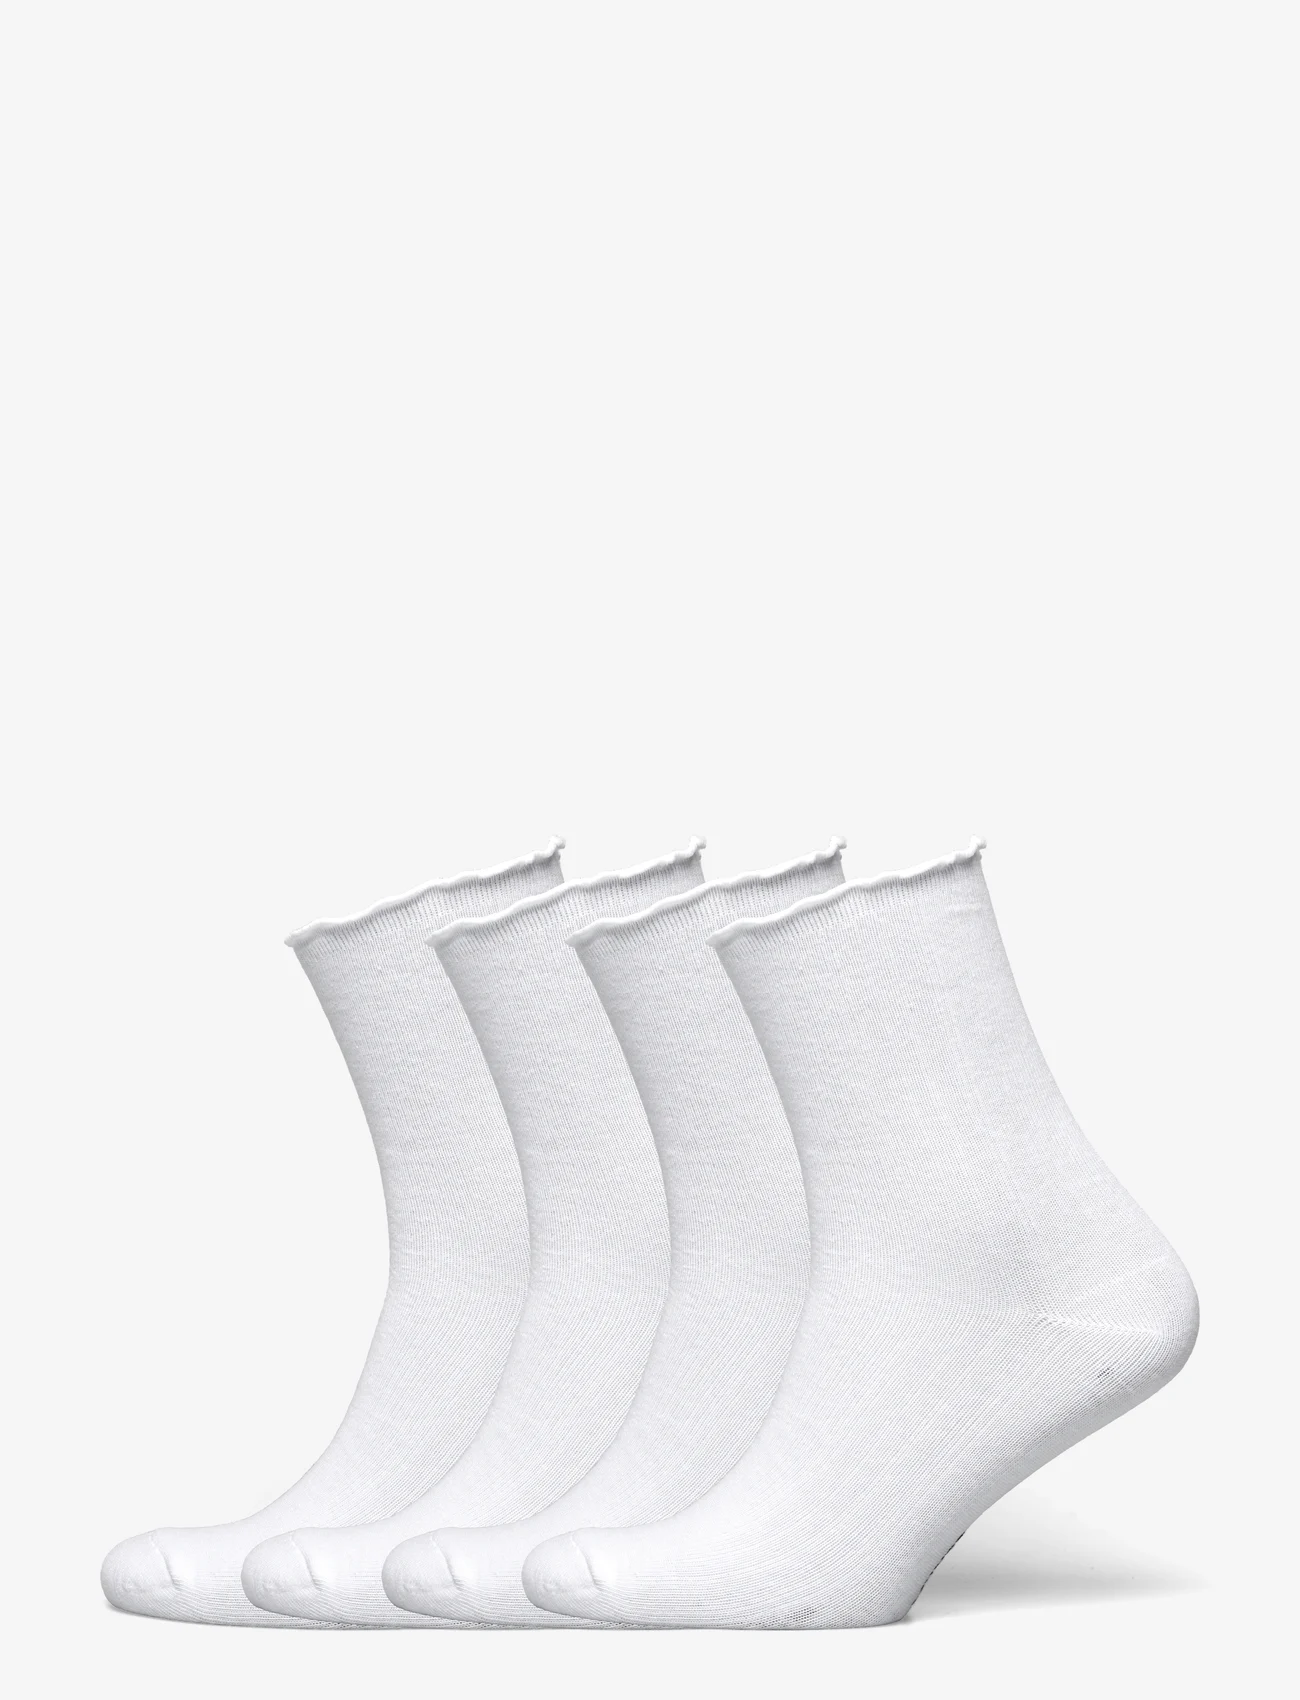 Rosemunde - RHAtlanta socks - 4-pack - lowest prices - new white - 0